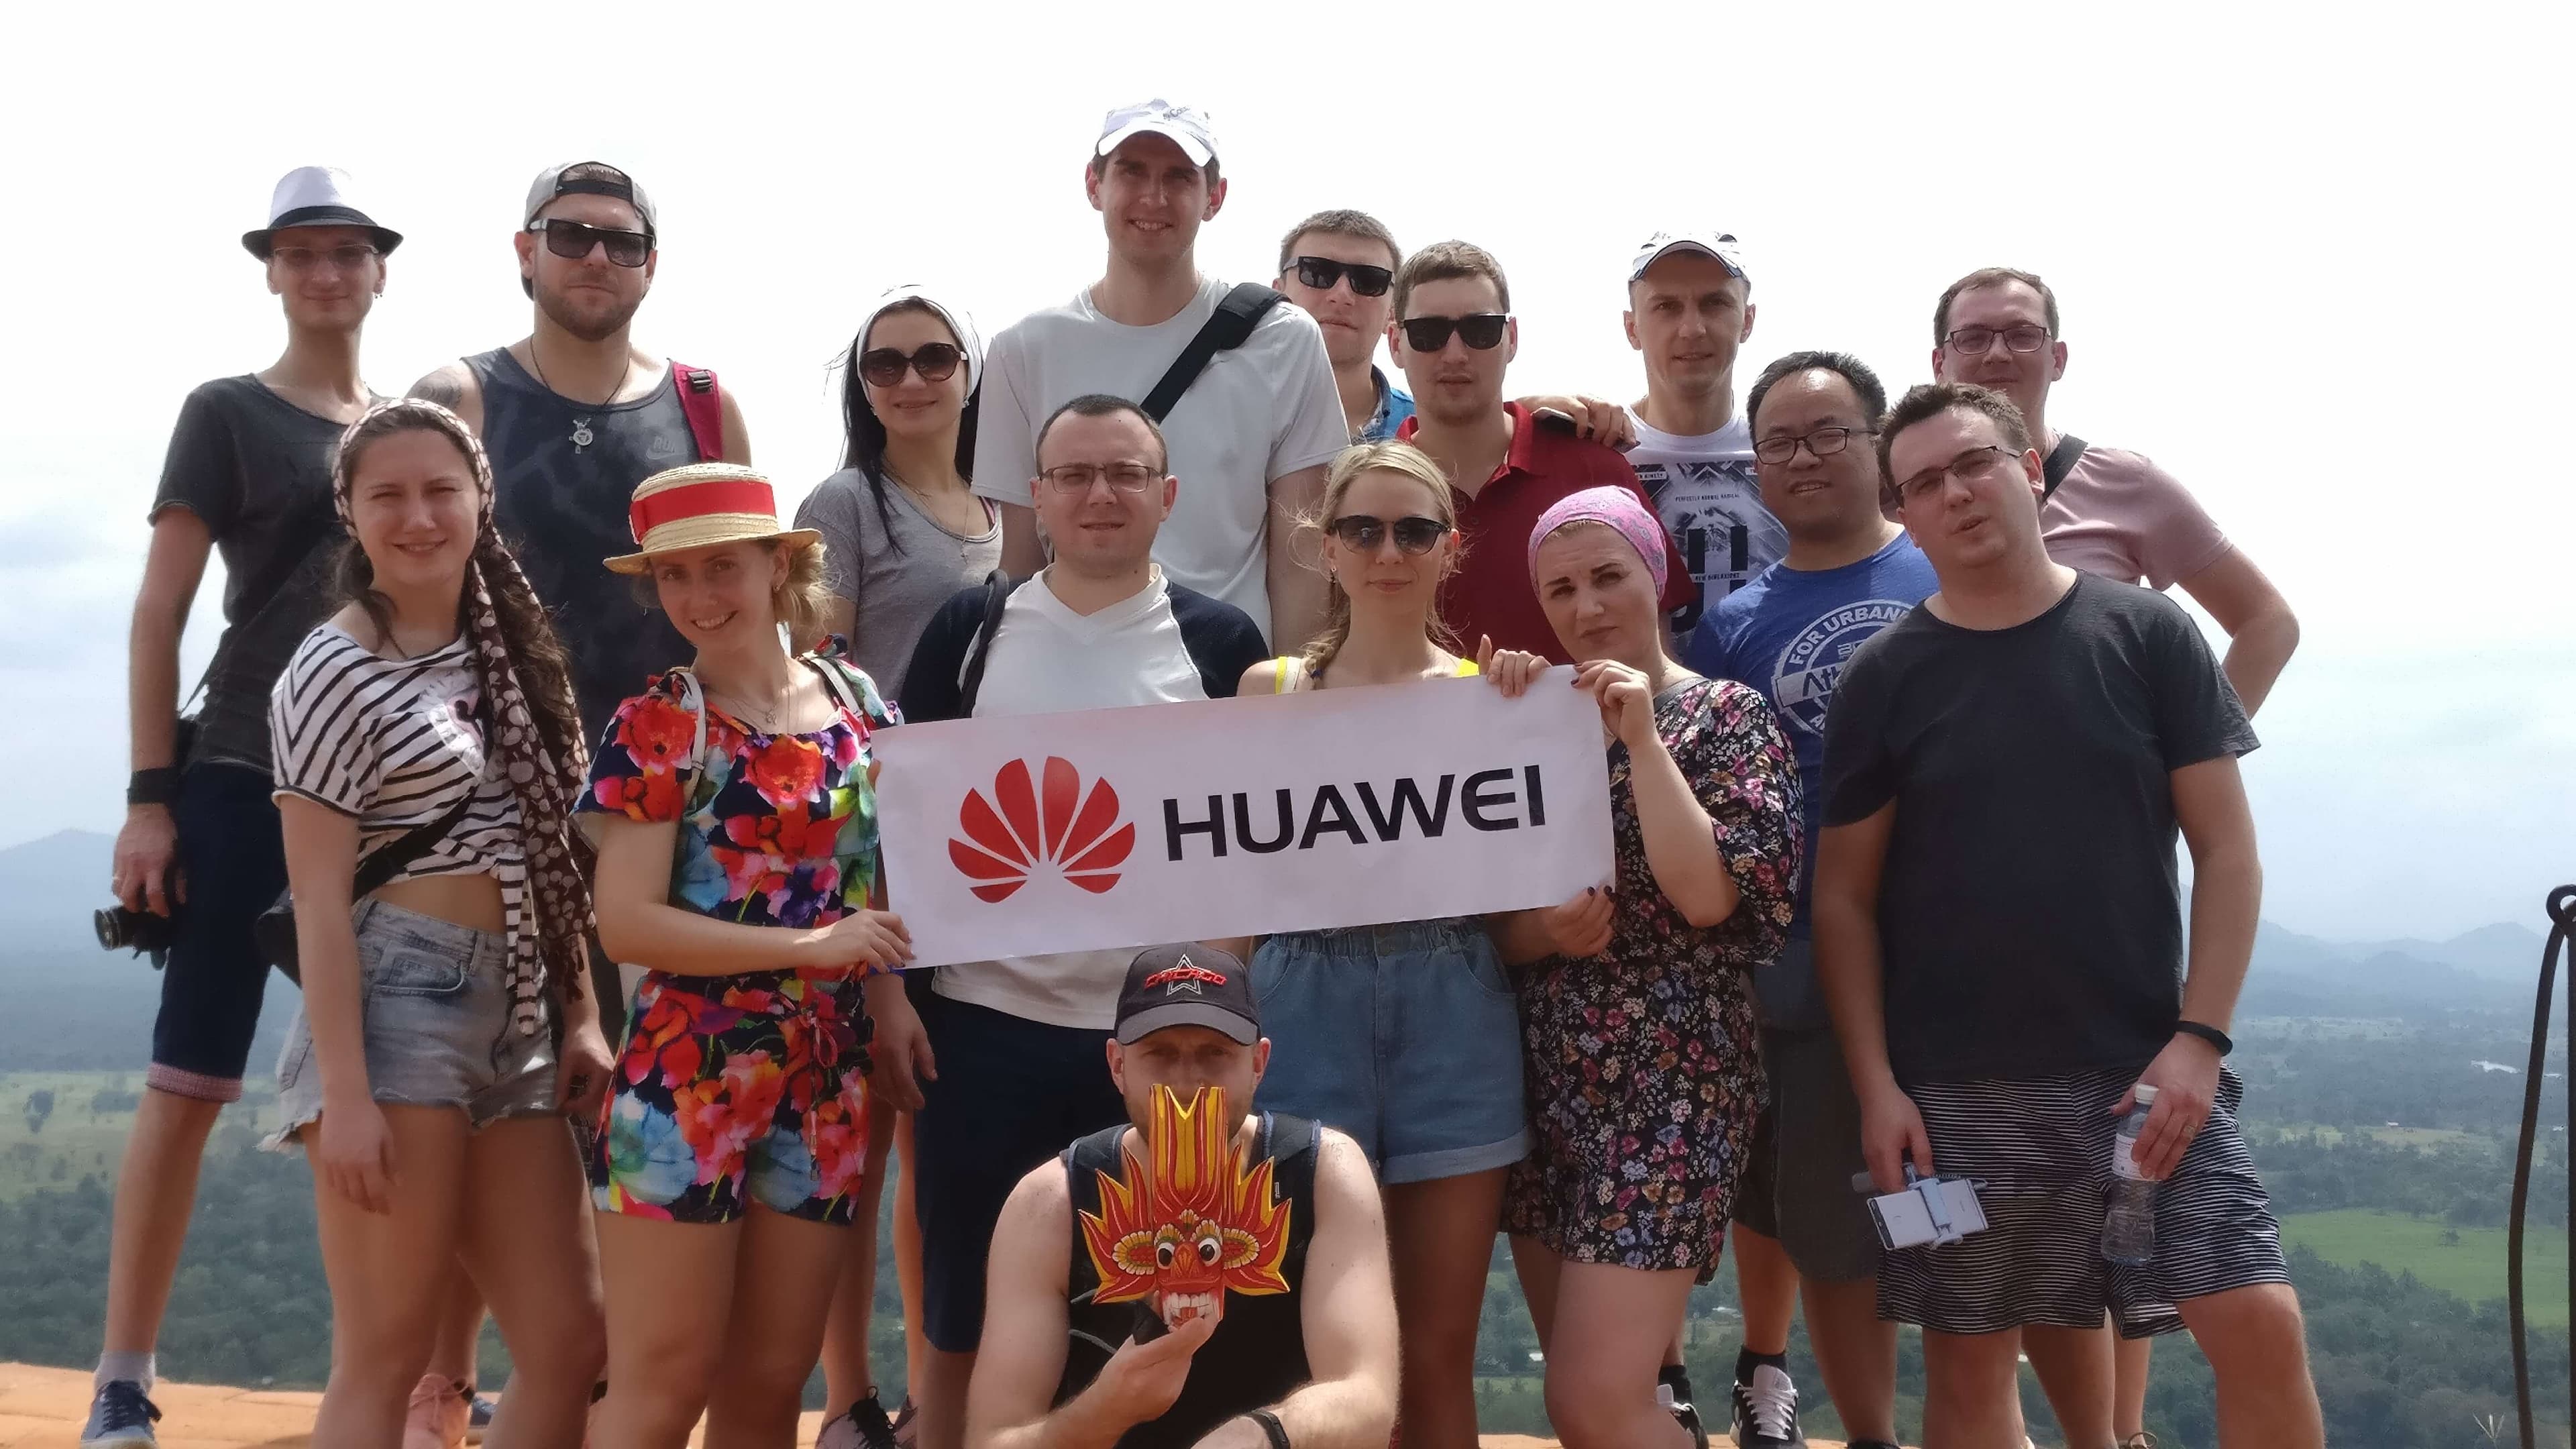 Huawei sponserte einen Incentive-Urlaub, um die Moral des Teams zu stärken.